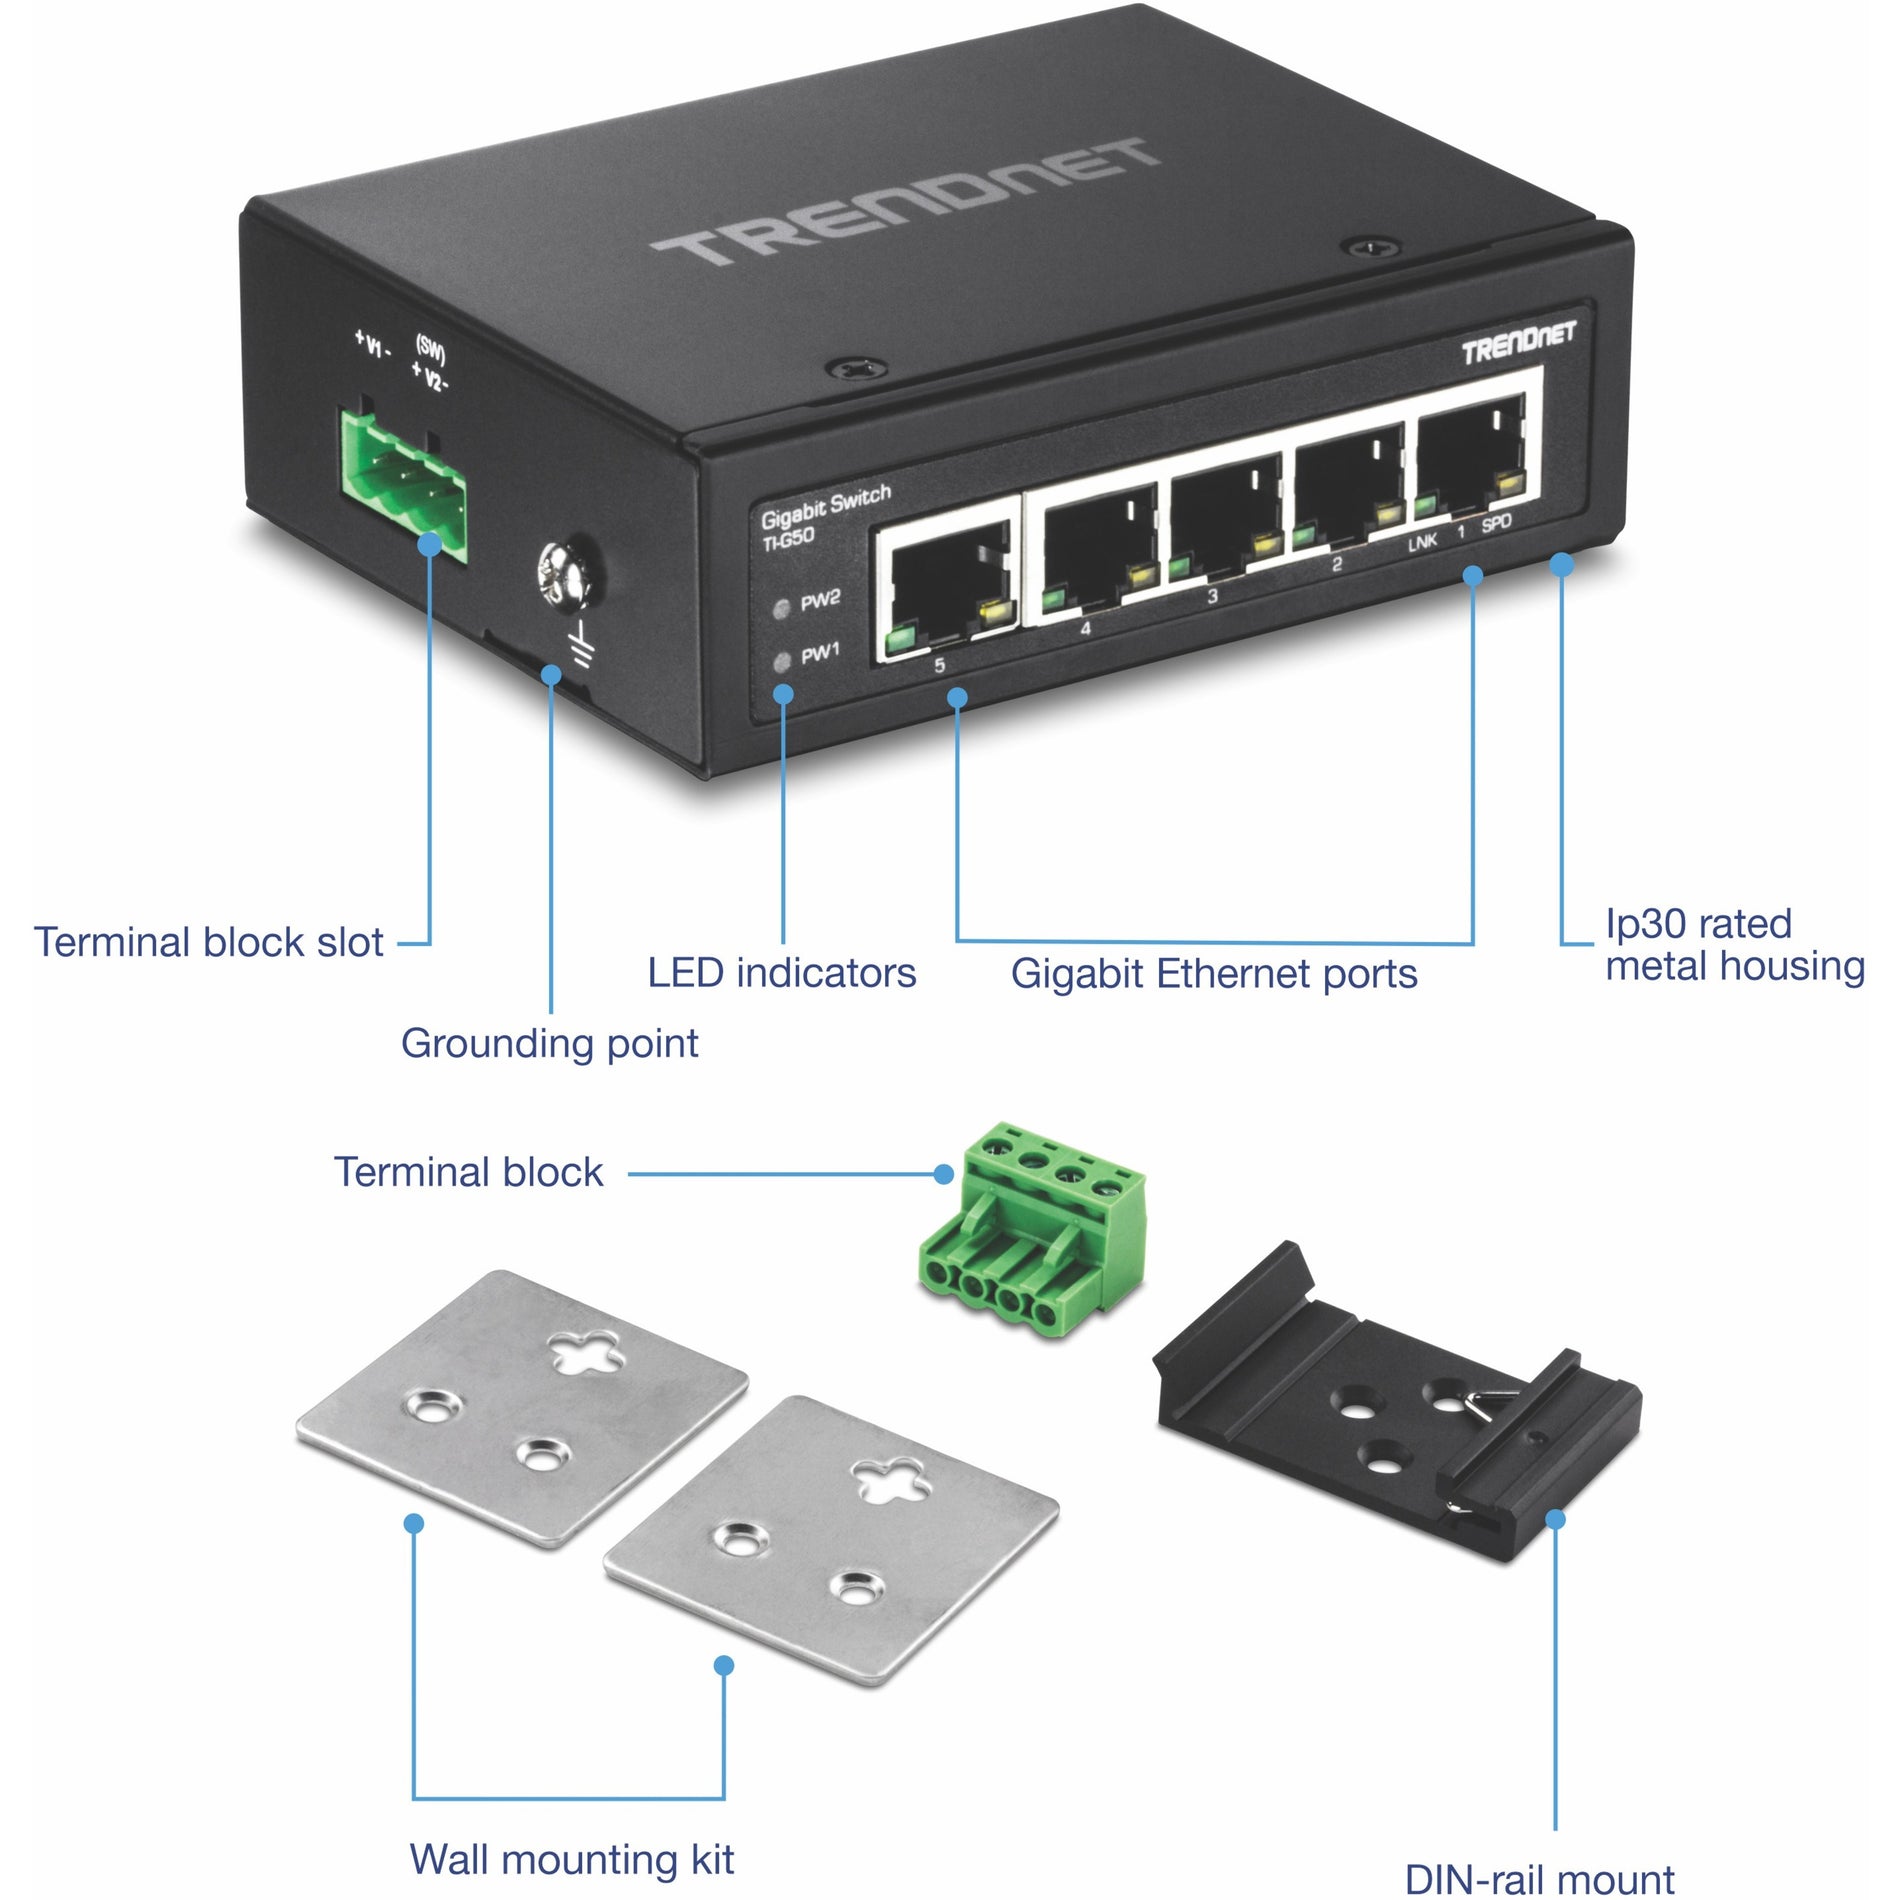 TRENDnet TI-G50 5 puertos endurecidos Industrial Gigabit Switch 10 Gbps Capacidad de Conmutación Clasificación IP30 Network Switch (-40 a 167 ?F) DIN-Rail & Montajes en Pared Incluidos Protección de por Vida Negro